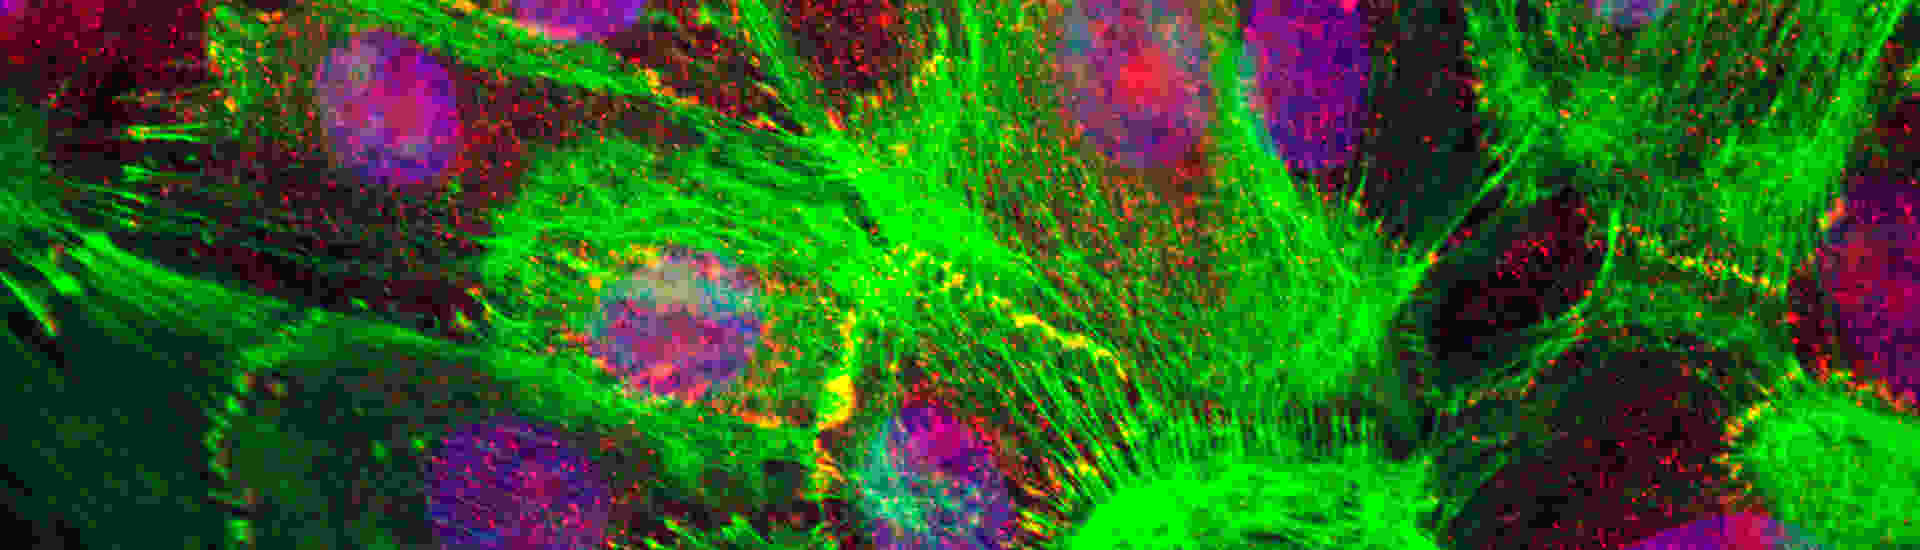 Flourescent cells image